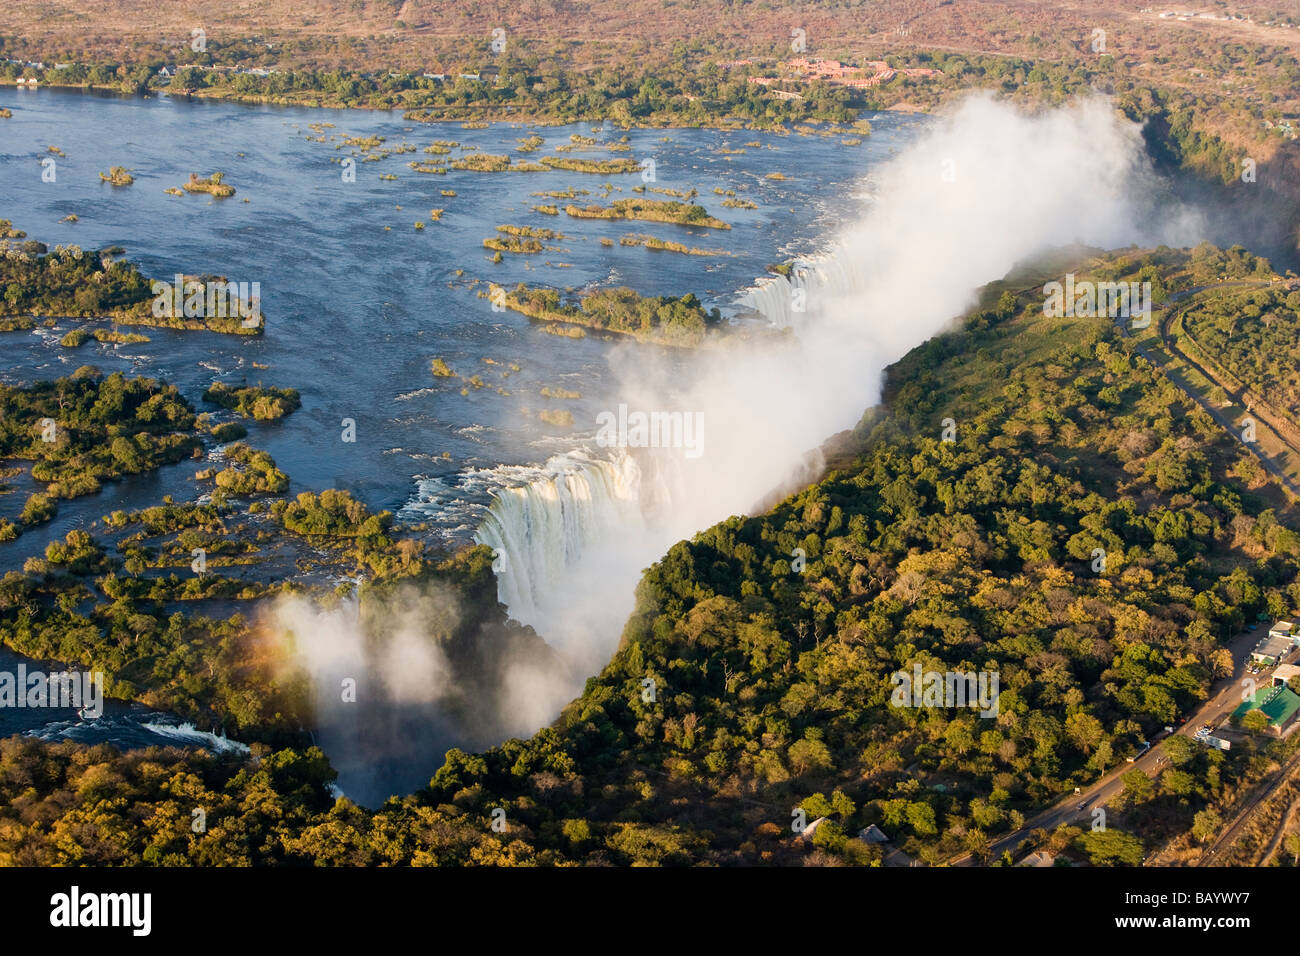 Hélicoptère antenne pleine vue de Misty Chutes Victoria à la frontière de la Zambie et du Zimbabwe, l'une des 7 merveilles naturelles et plus grande cascade dans le monde Banque D'Images